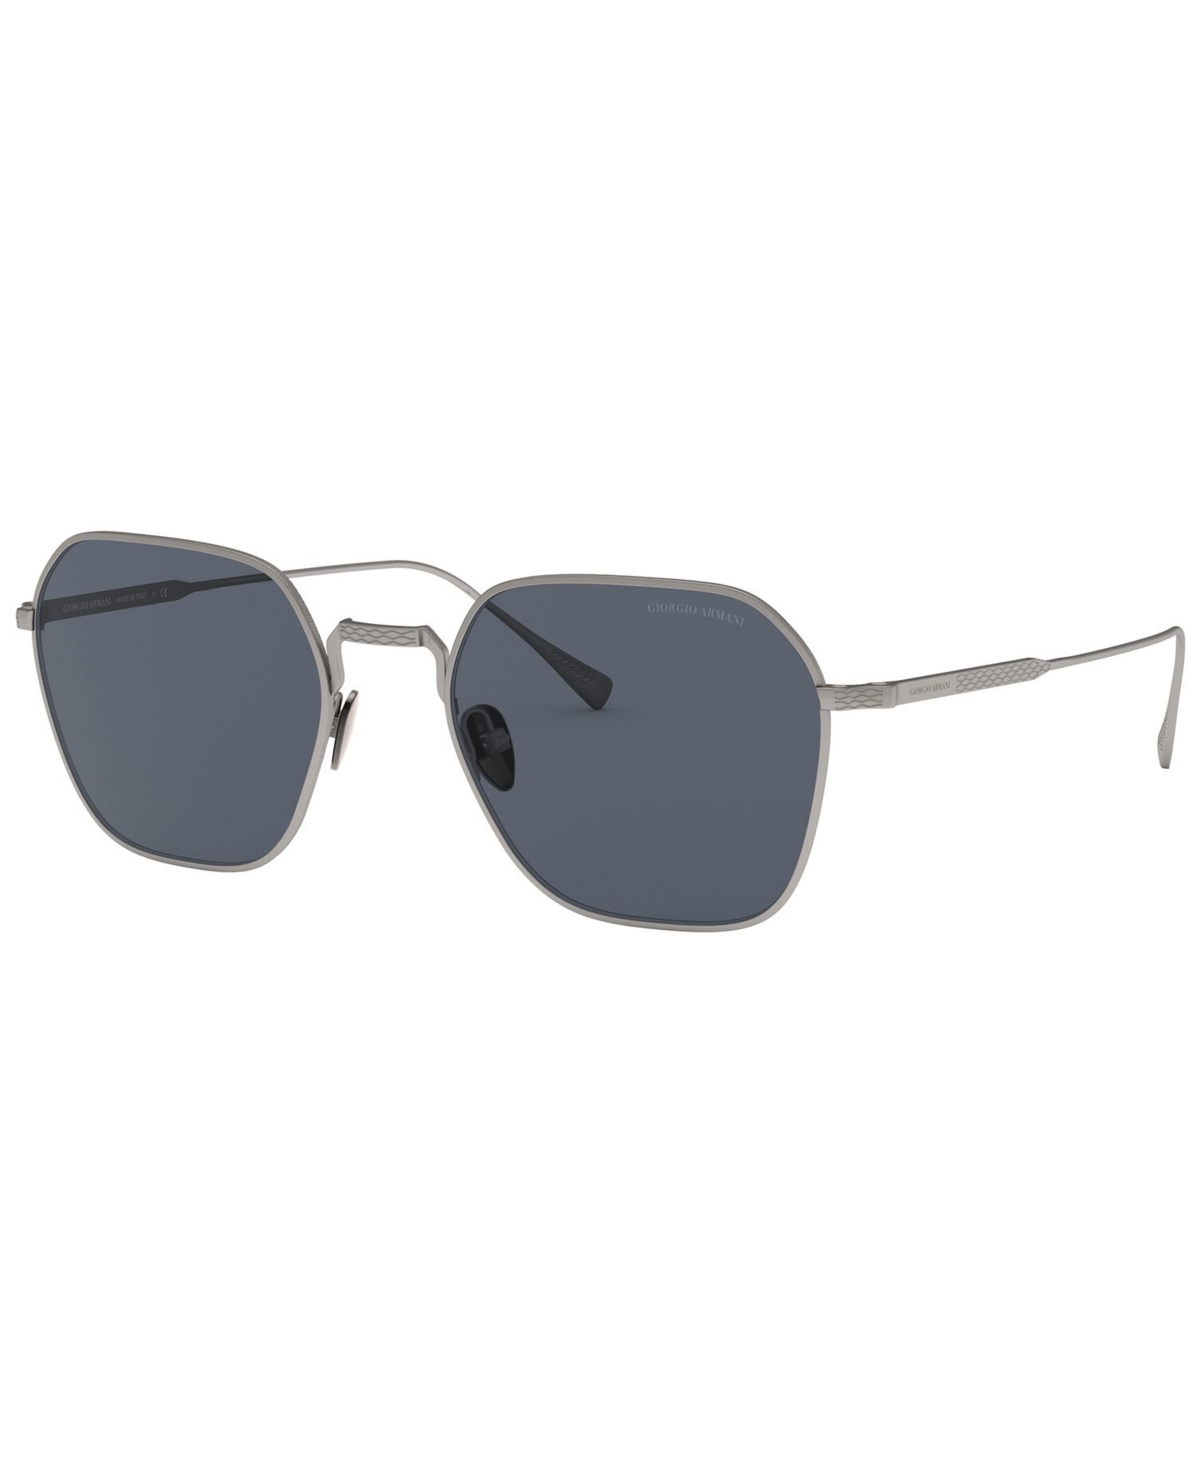 Giorgio Armani Men's Sunglasses In Matte Gunmetal,grey